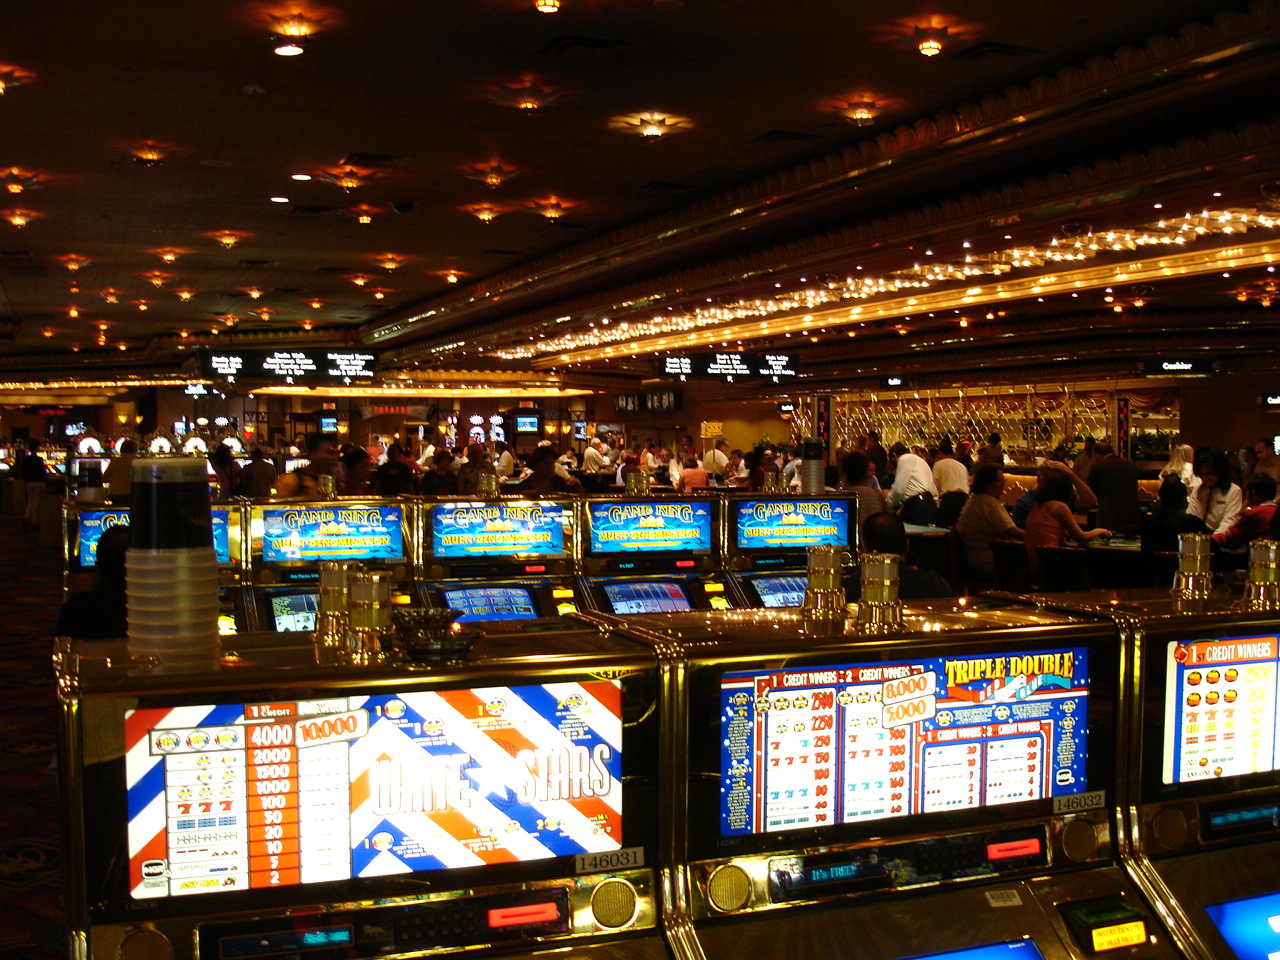 Juegos de casino gratis sin descargar